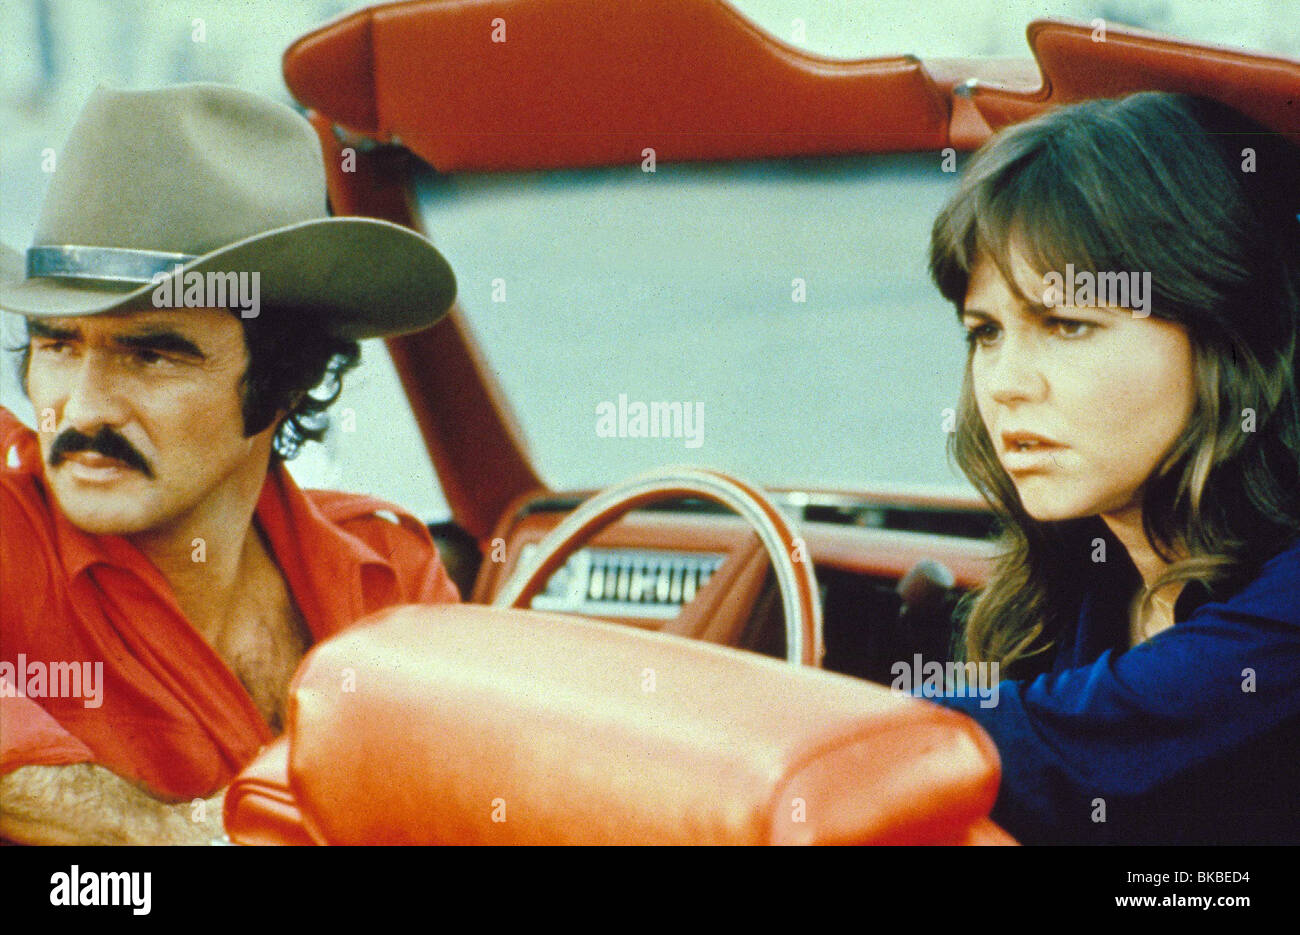 SMOKEY y el bandido (1977) Burt Reynolds, Sally Field cowboy hat SMBT 026 Foto de stock